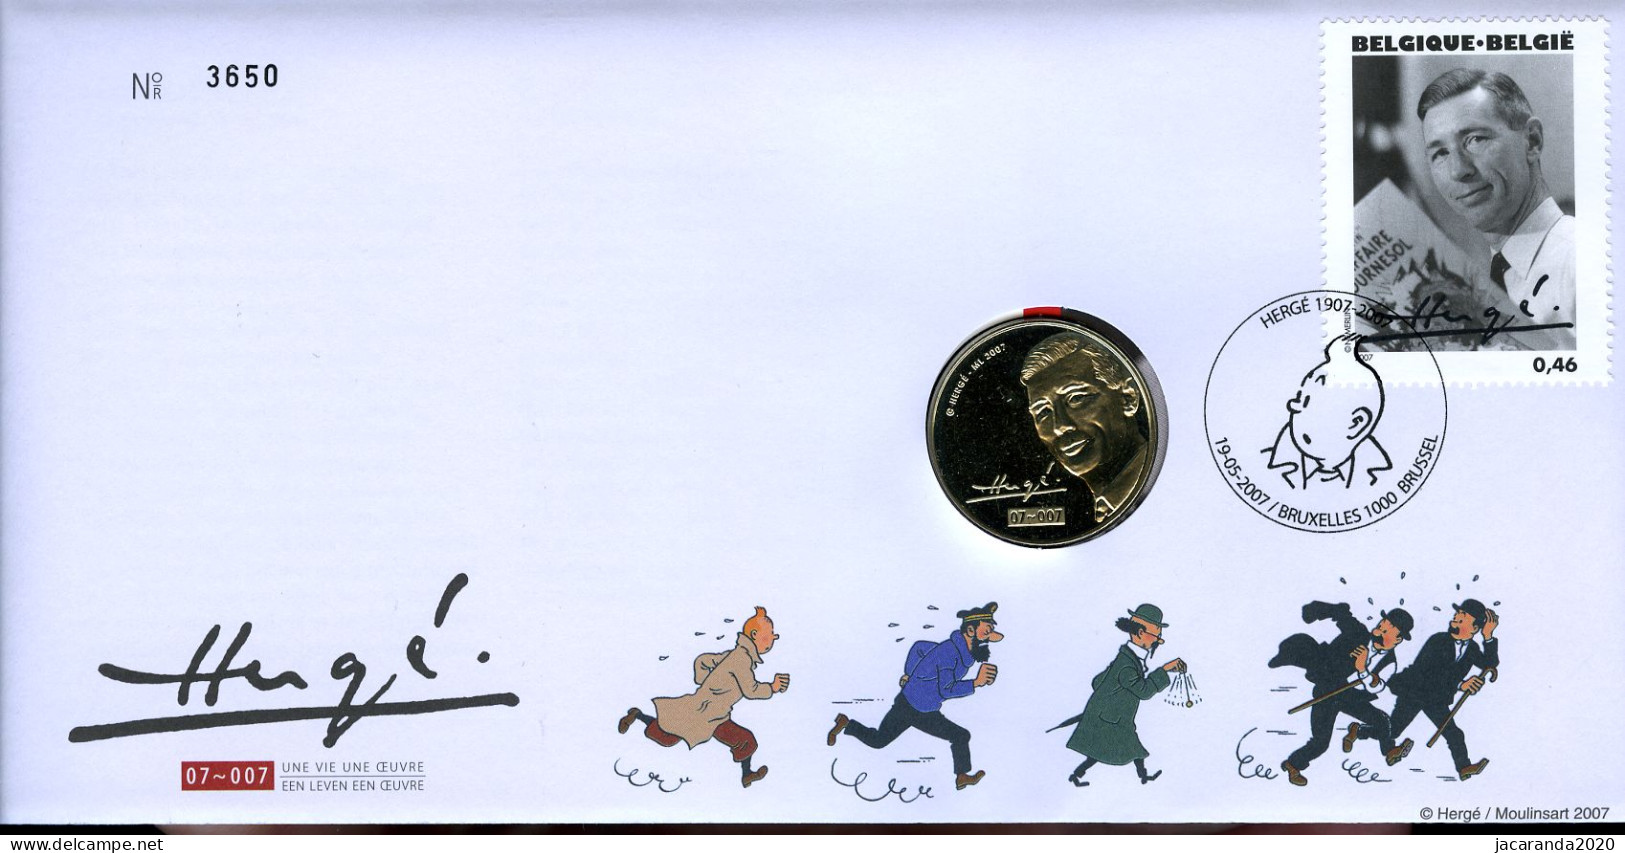 België 3648 NUM - Numisletter - Portret Van Hergé - Moulinsart - Strips - BD - Comics - Kuifje - Tintin - 2007 - Numisletters